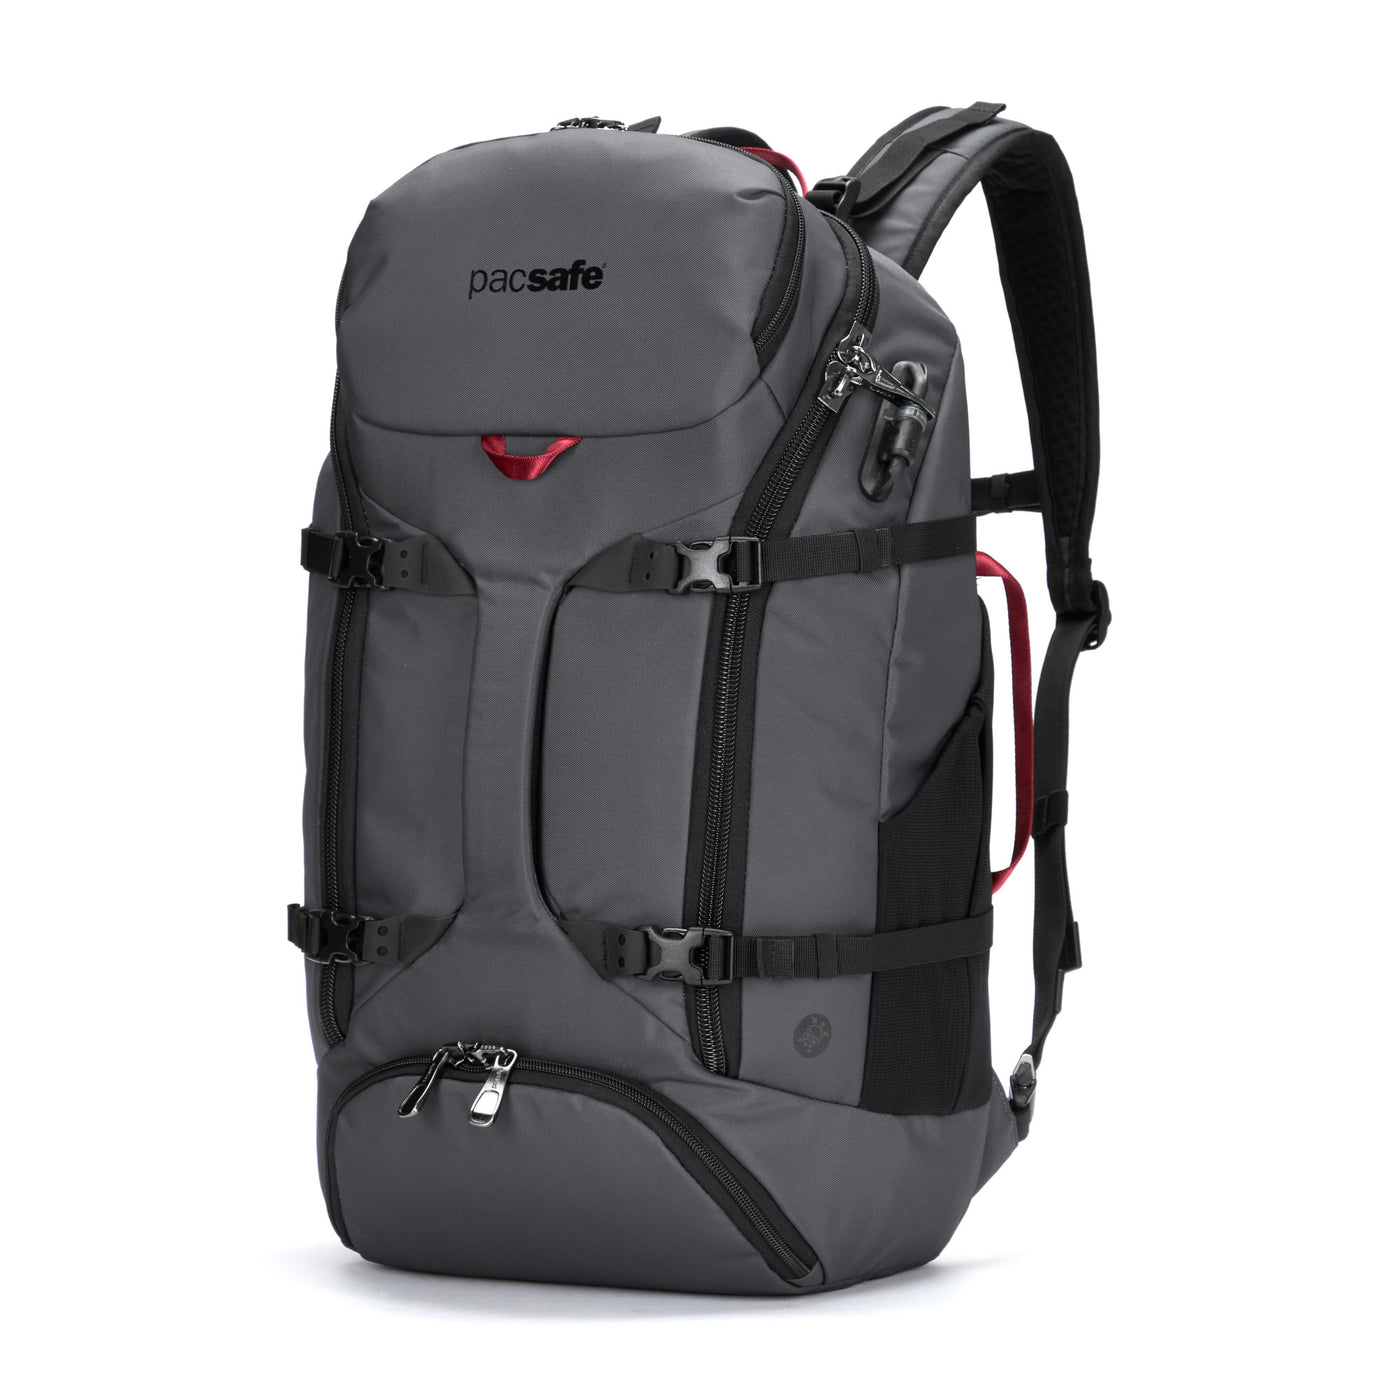 Venturesafe EXP35 Travel Backpack